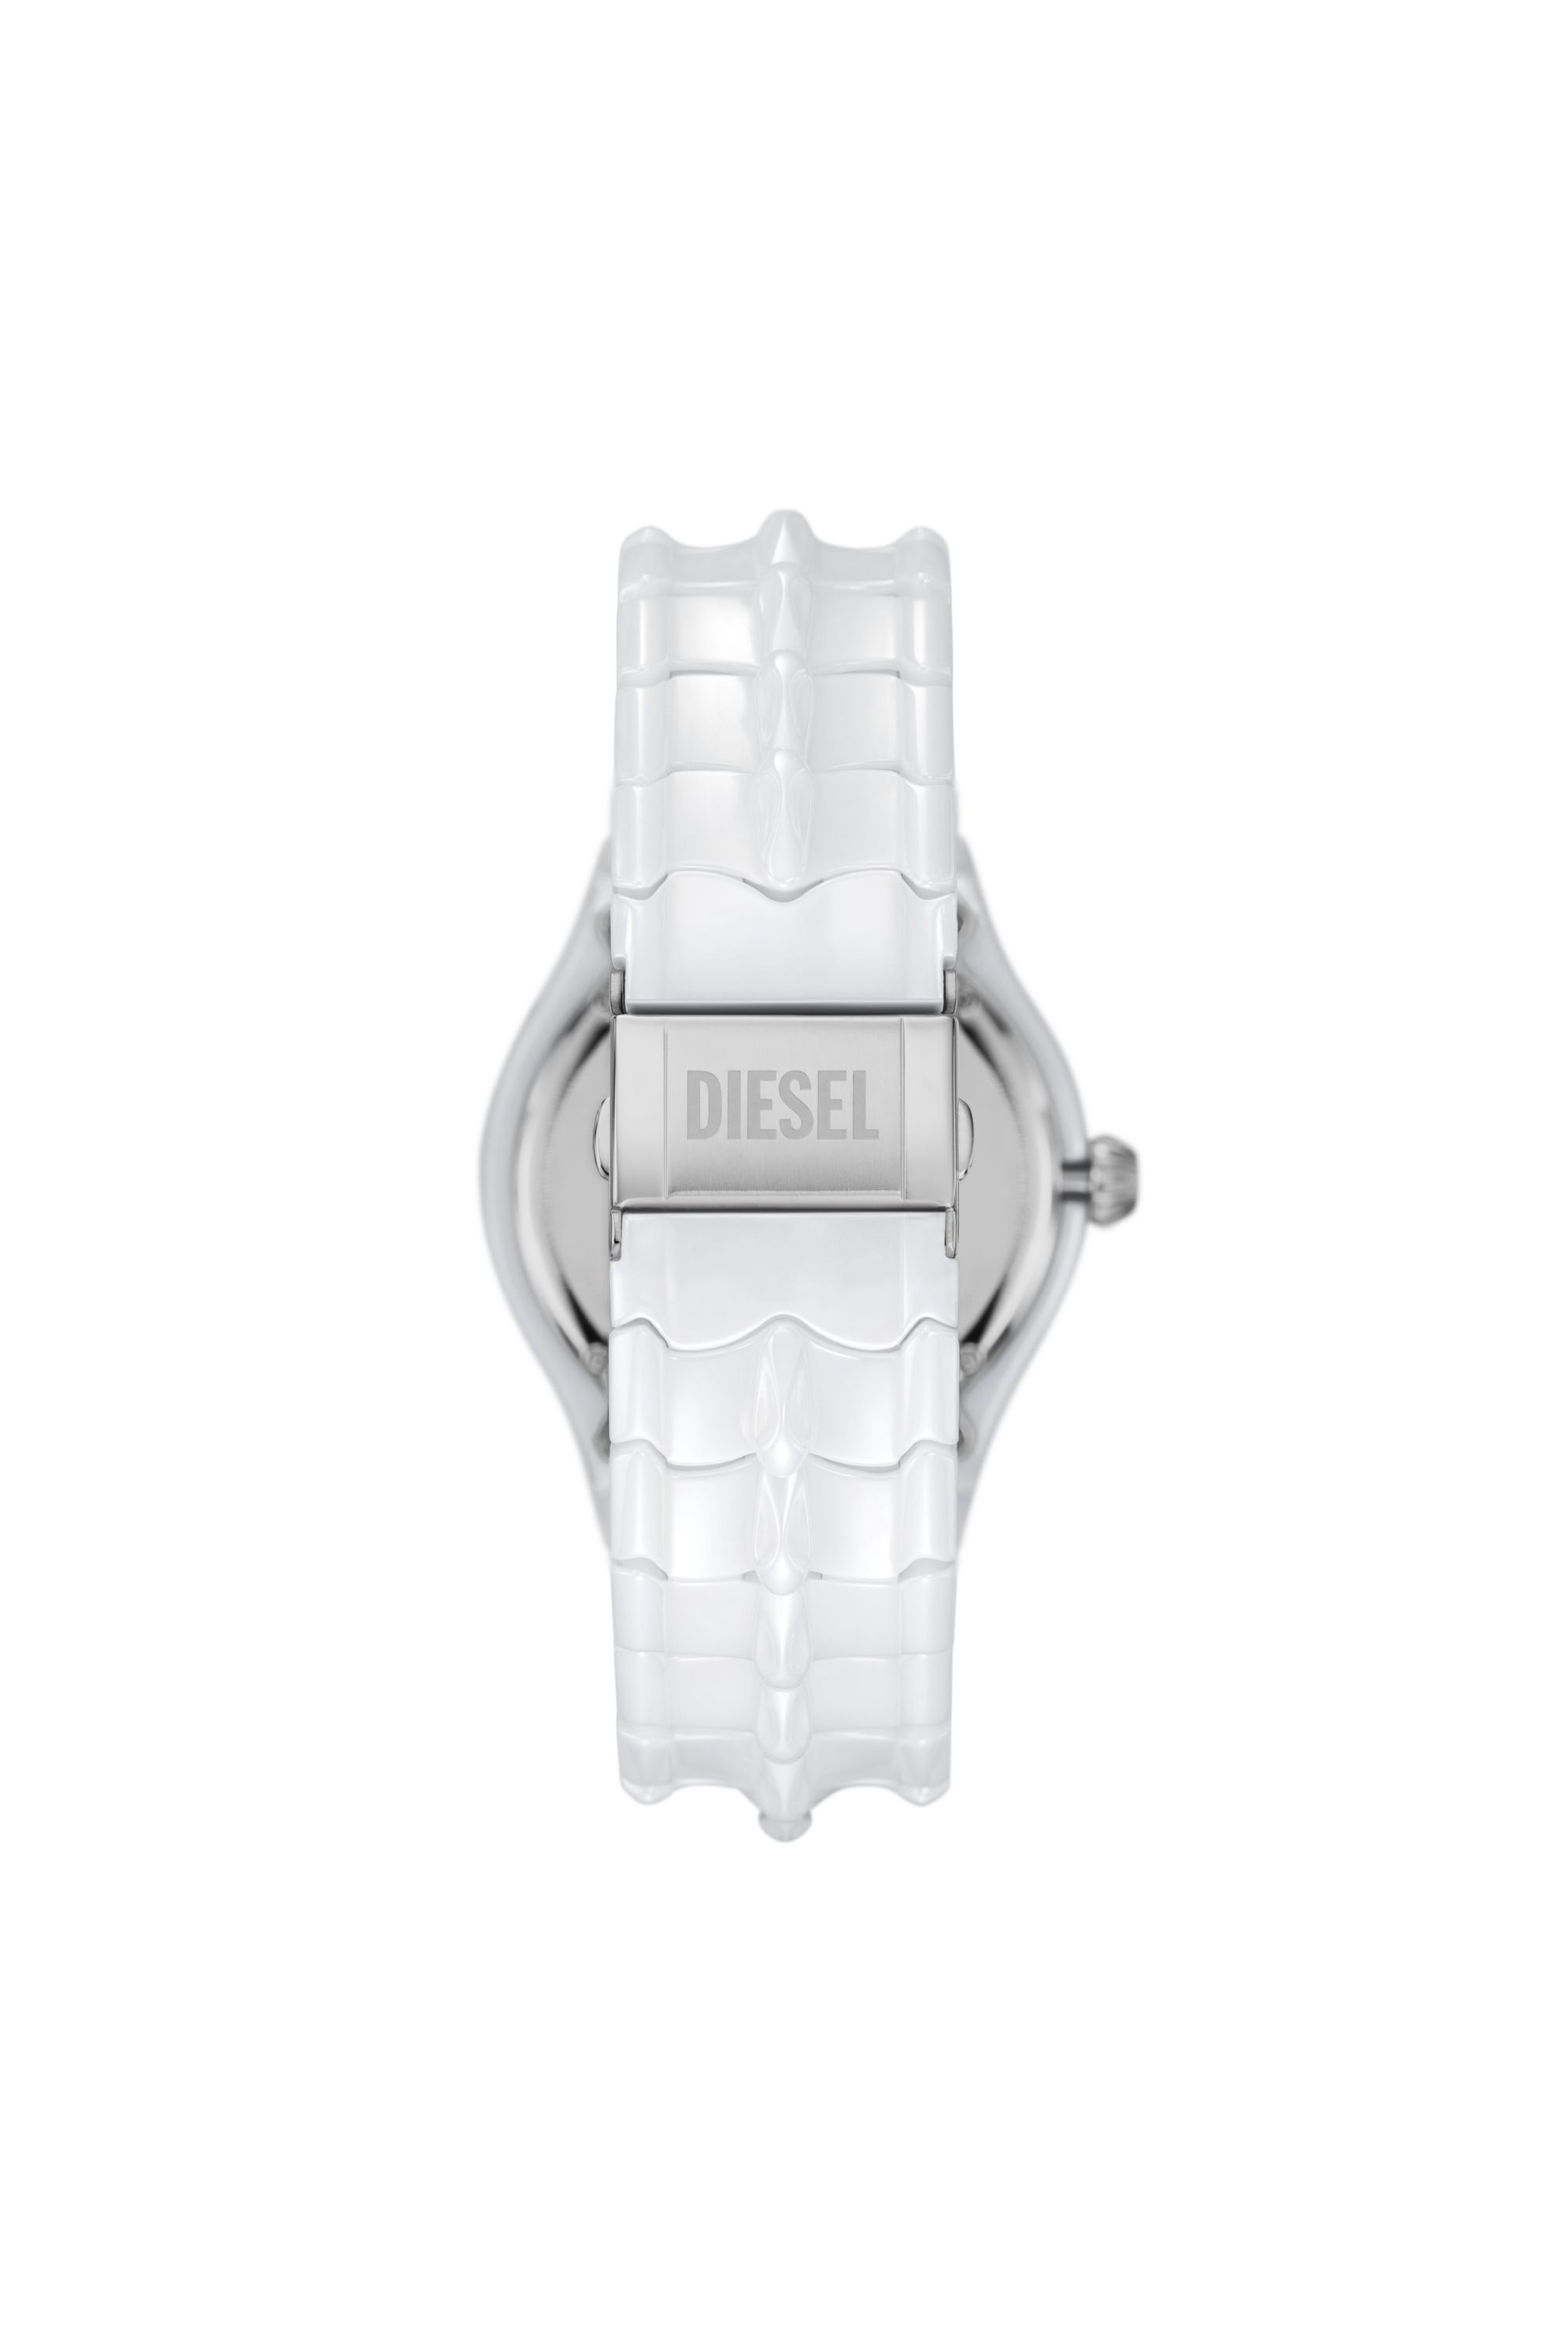 Diesel - DZ2197, Blanco - Image 2